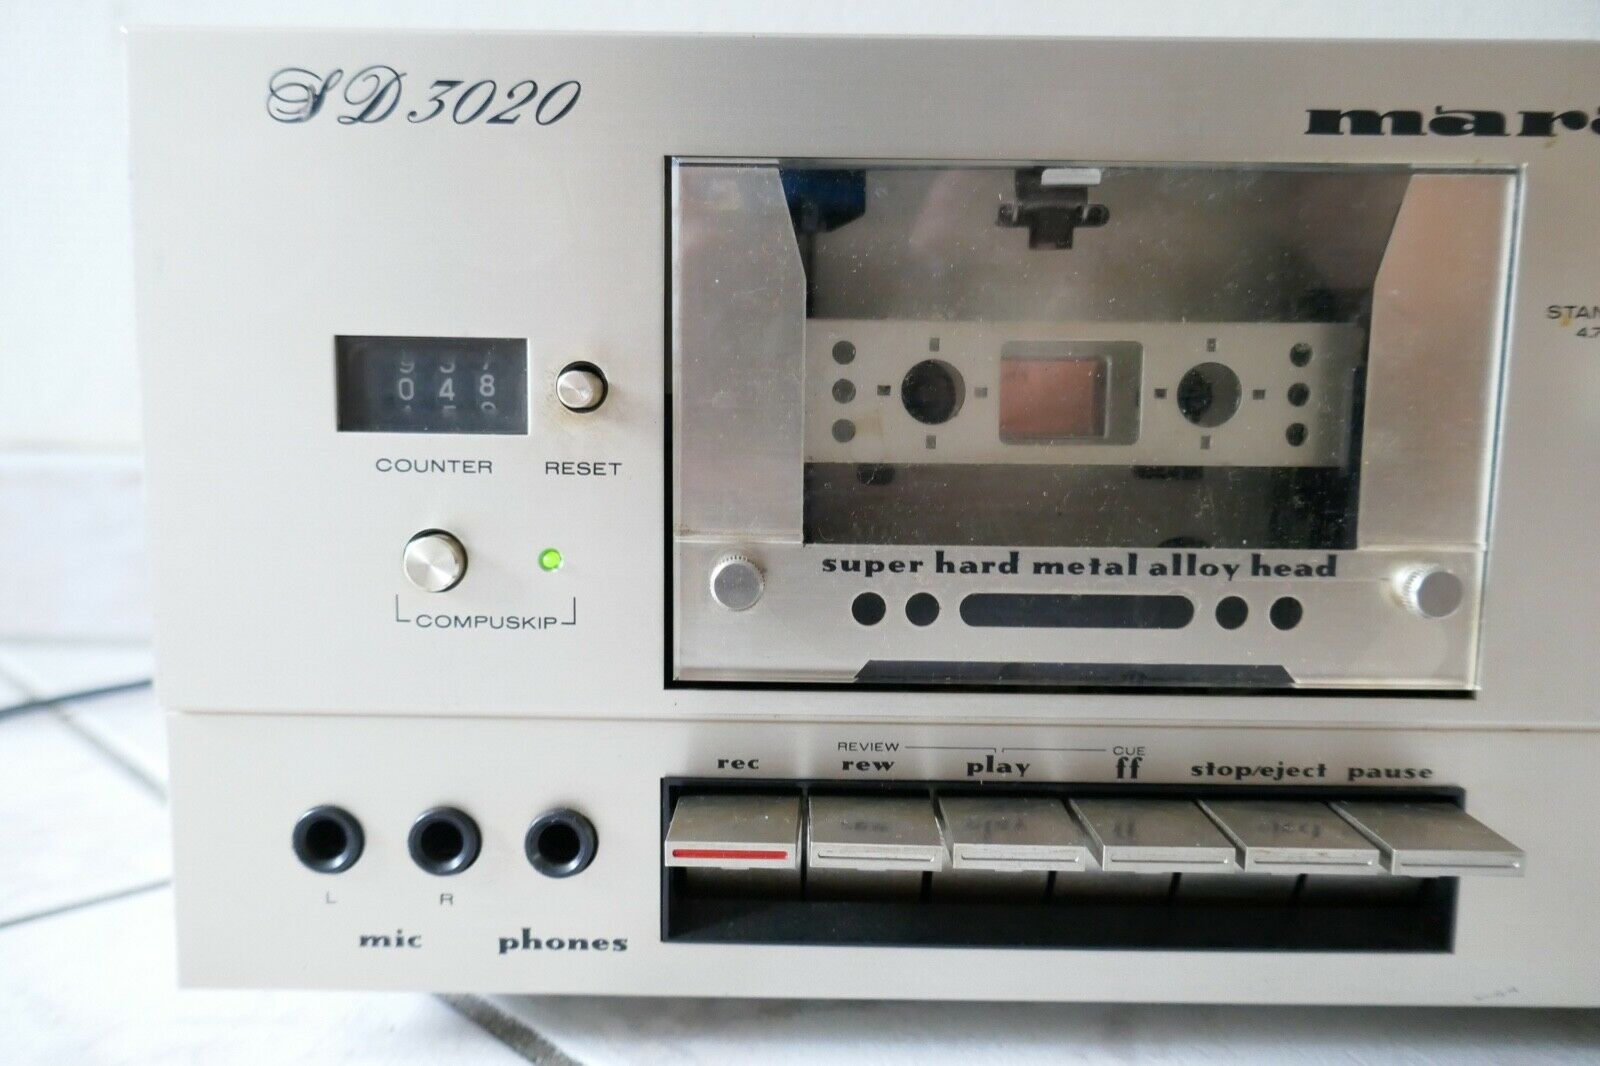 lecteur cassette tape deck marantz SD 3020 vintage occasion